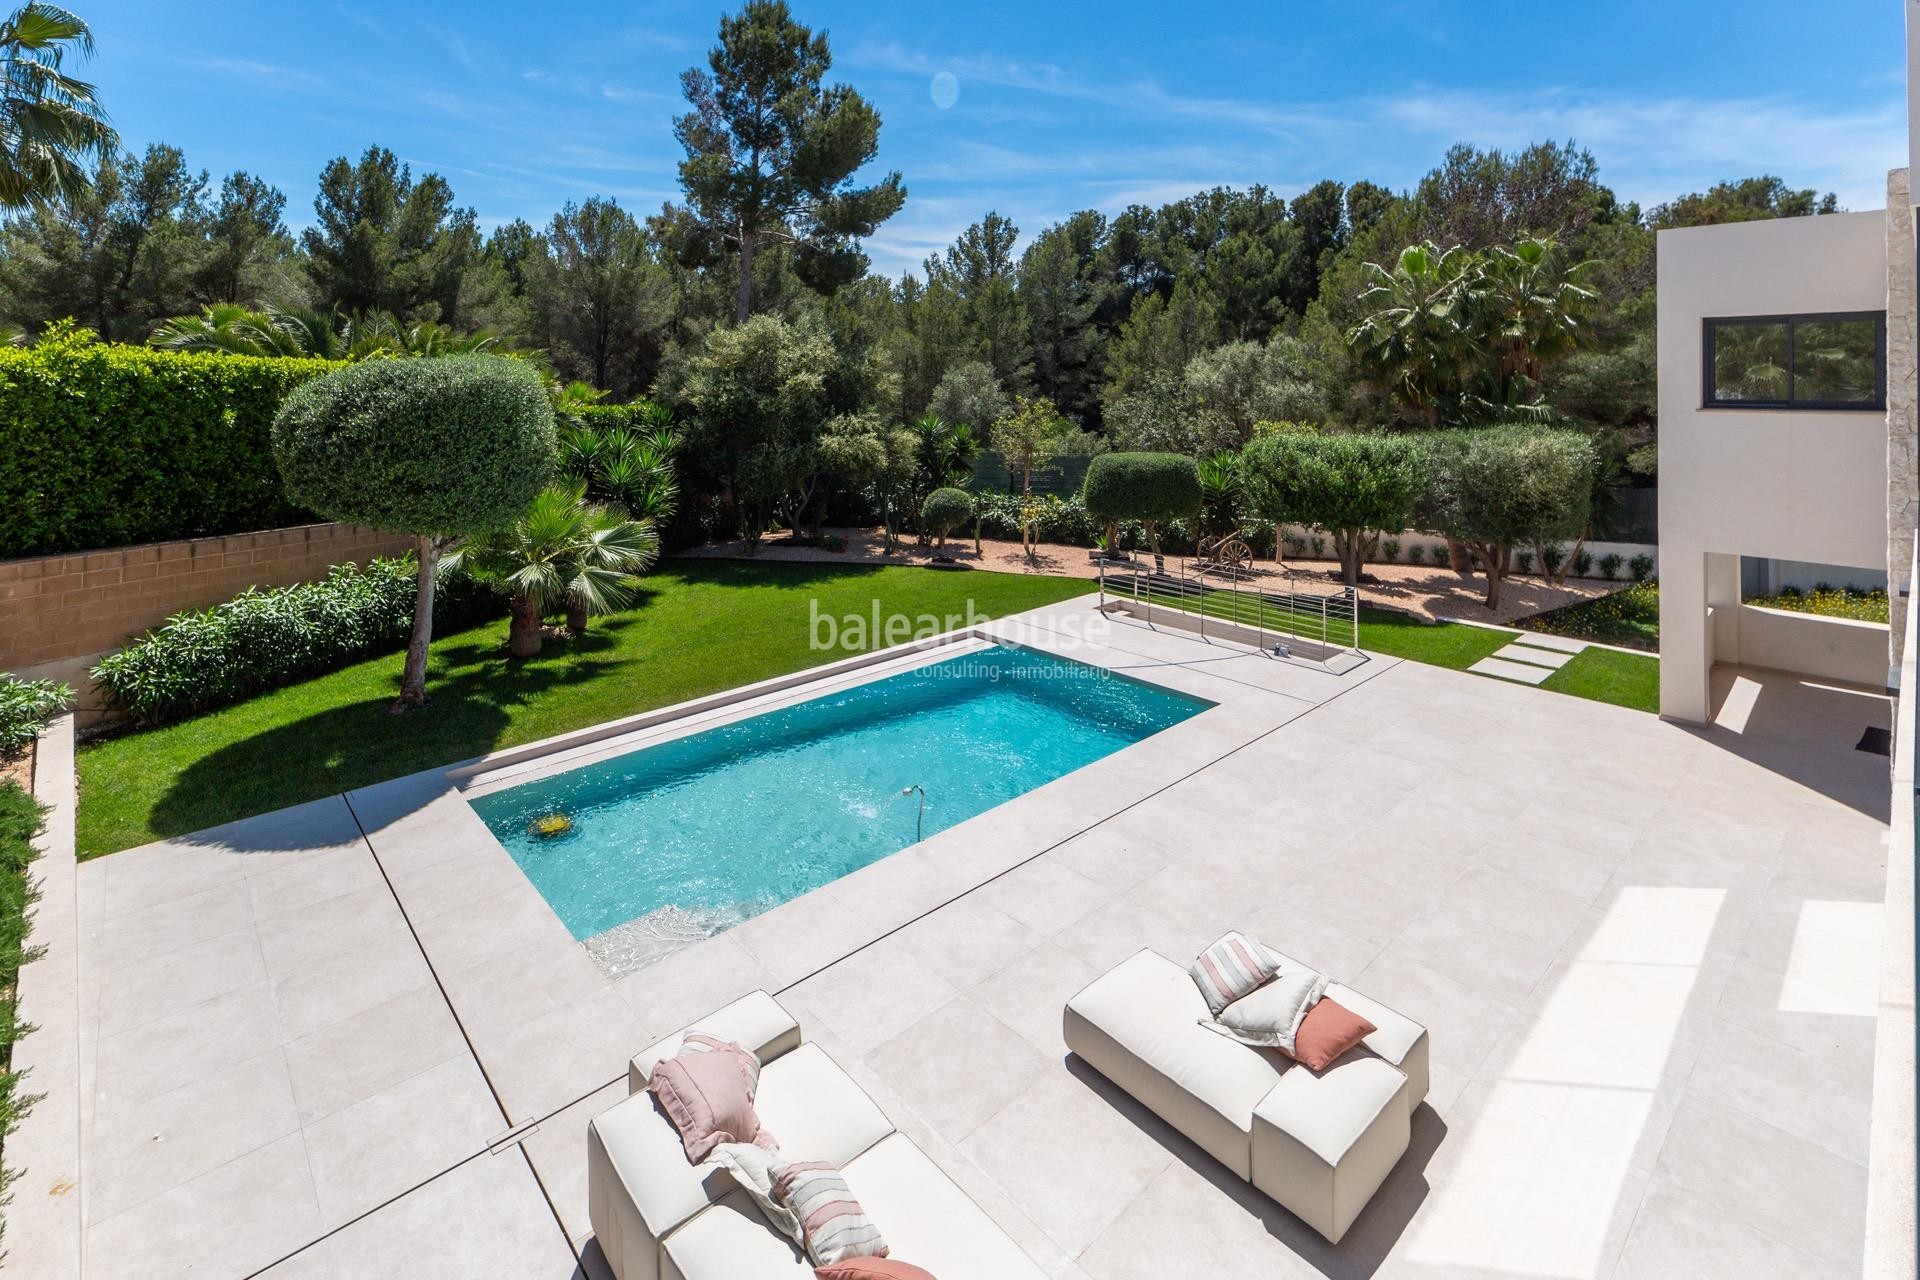 Impecable villa de diseño moderno llena de luz y grandes espacios de jardín y piscina en Santa Ponsa